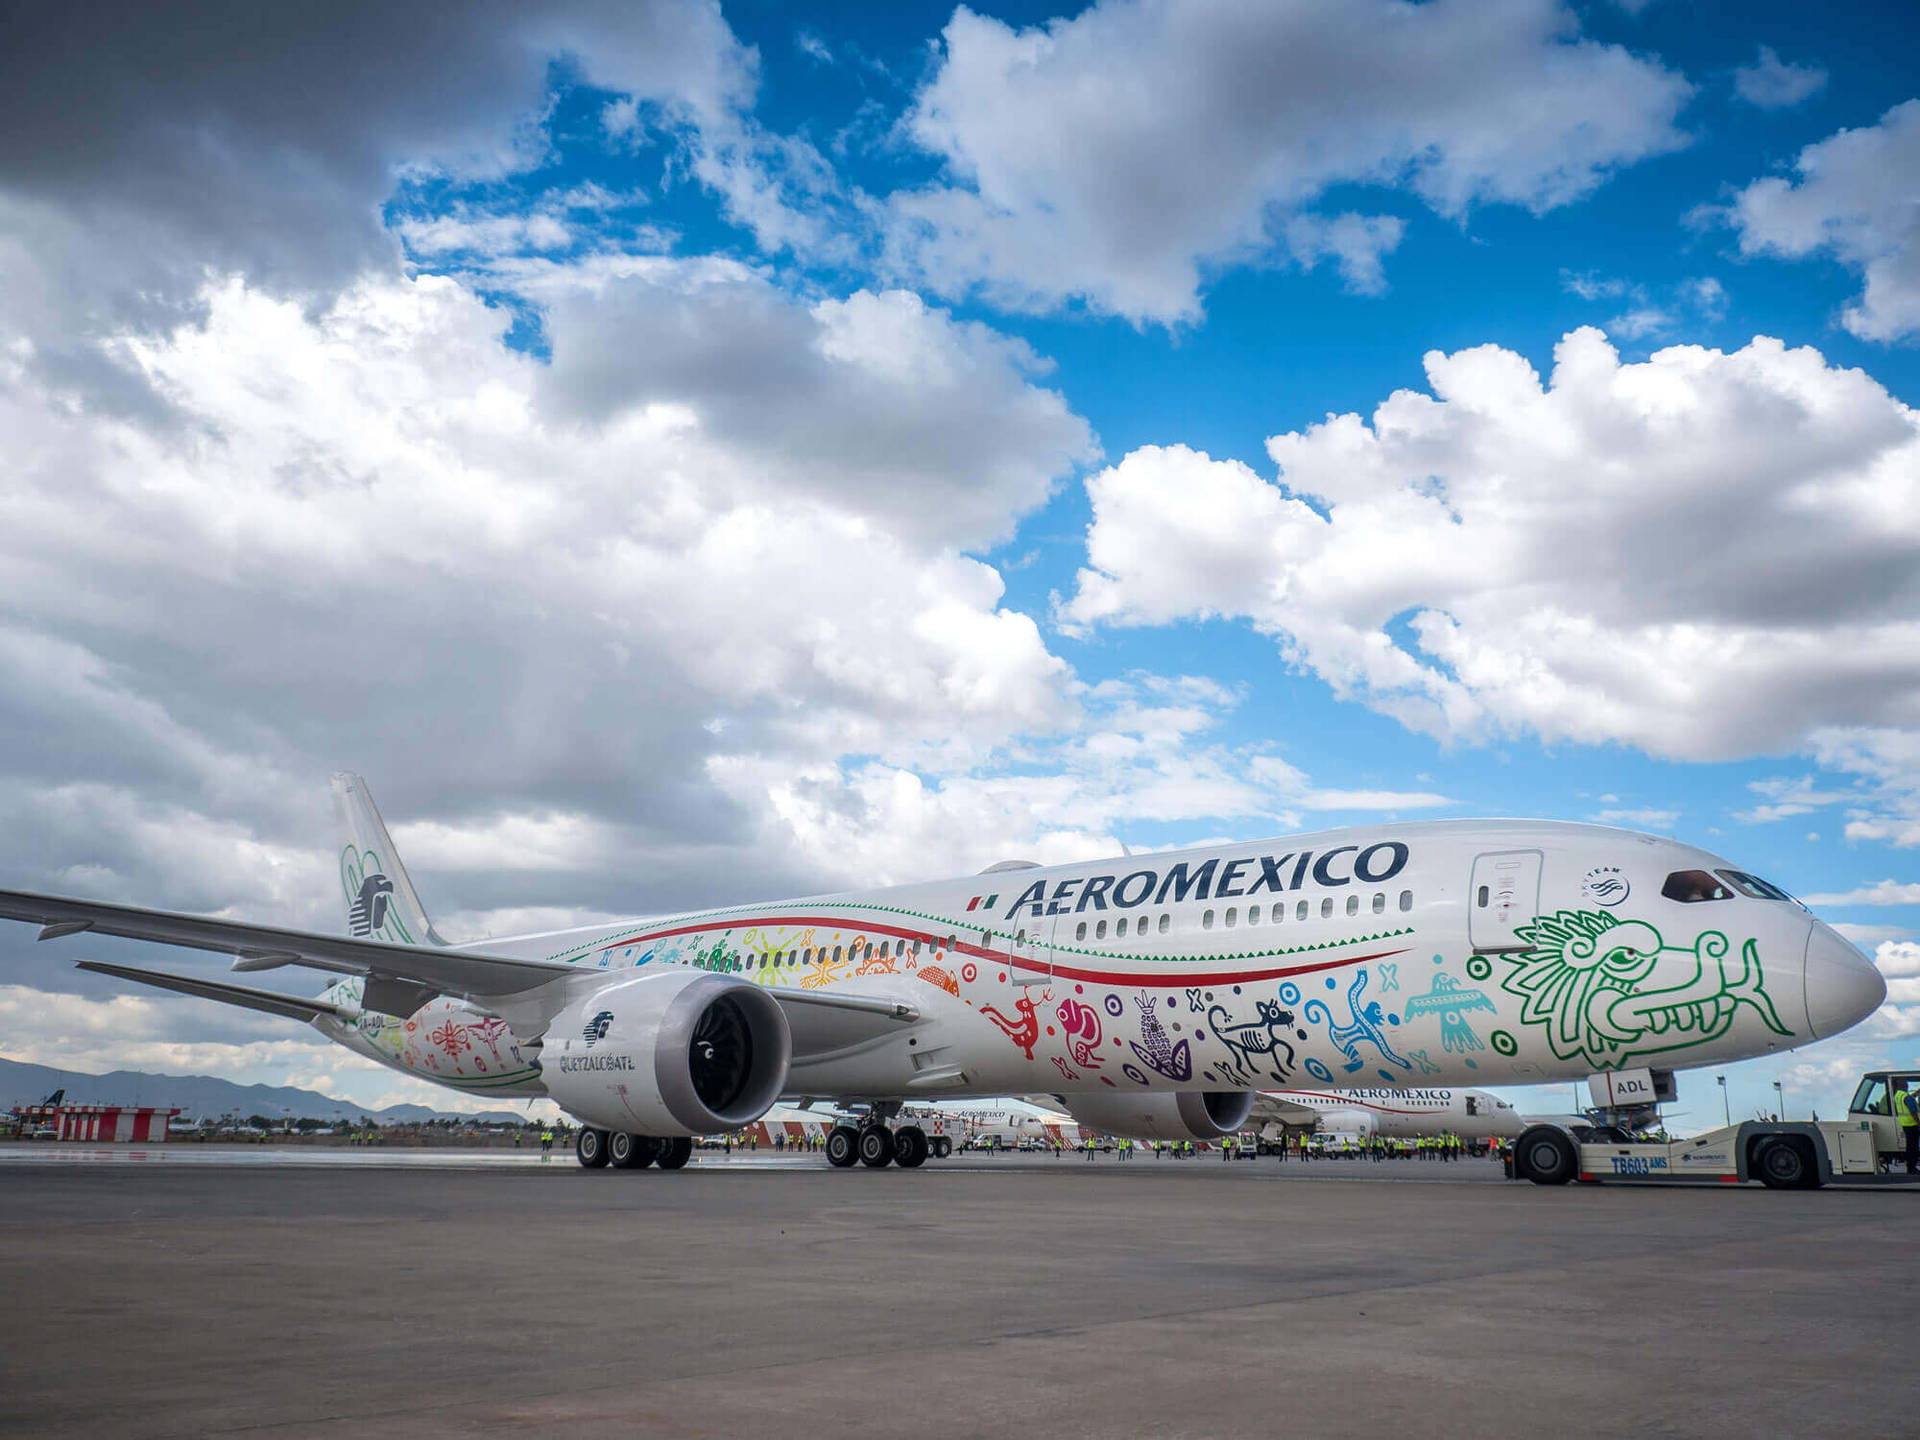 Aeromexicoboeing 787-9 Dreamliner Mit Quetzalcoatl Bemalung Wallpaper